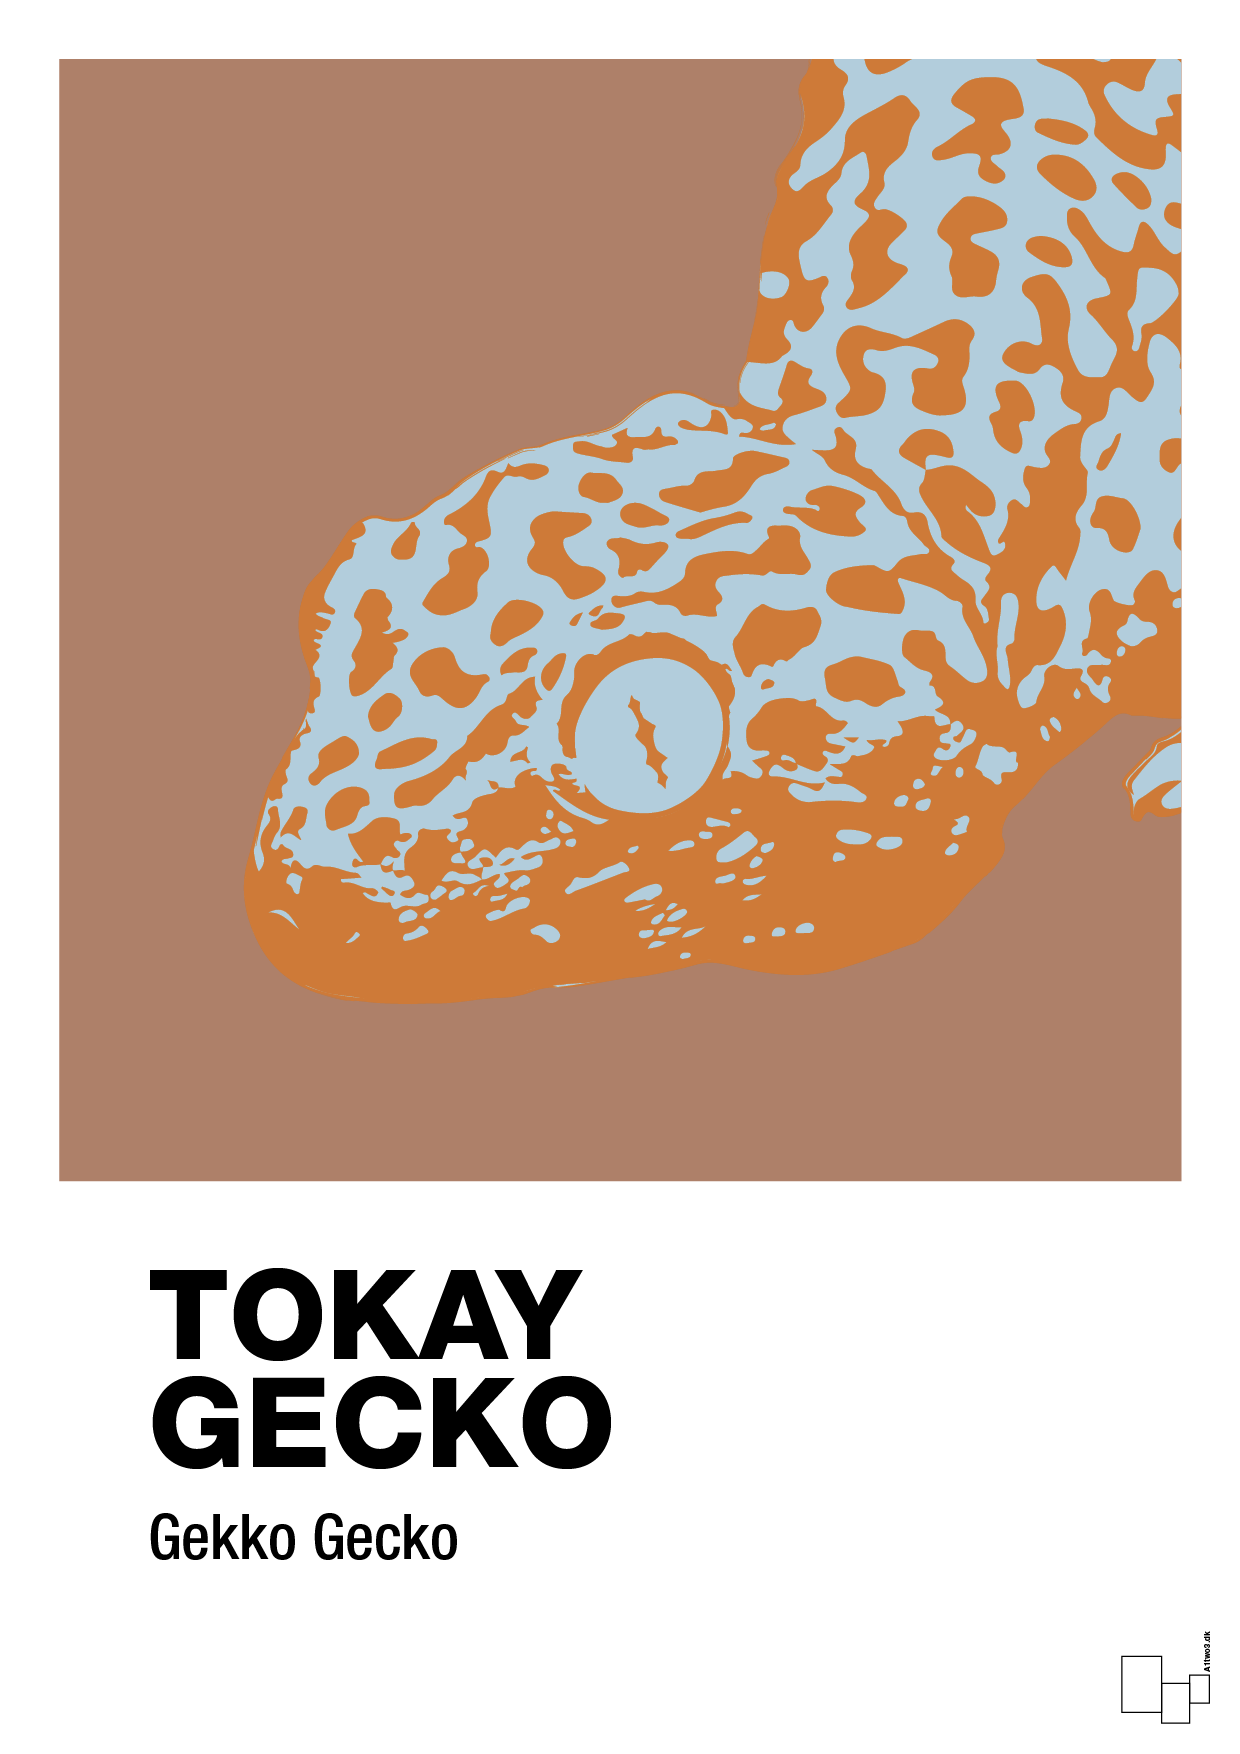 tokay gecko - Plakat med Videnskab i Cider Spice